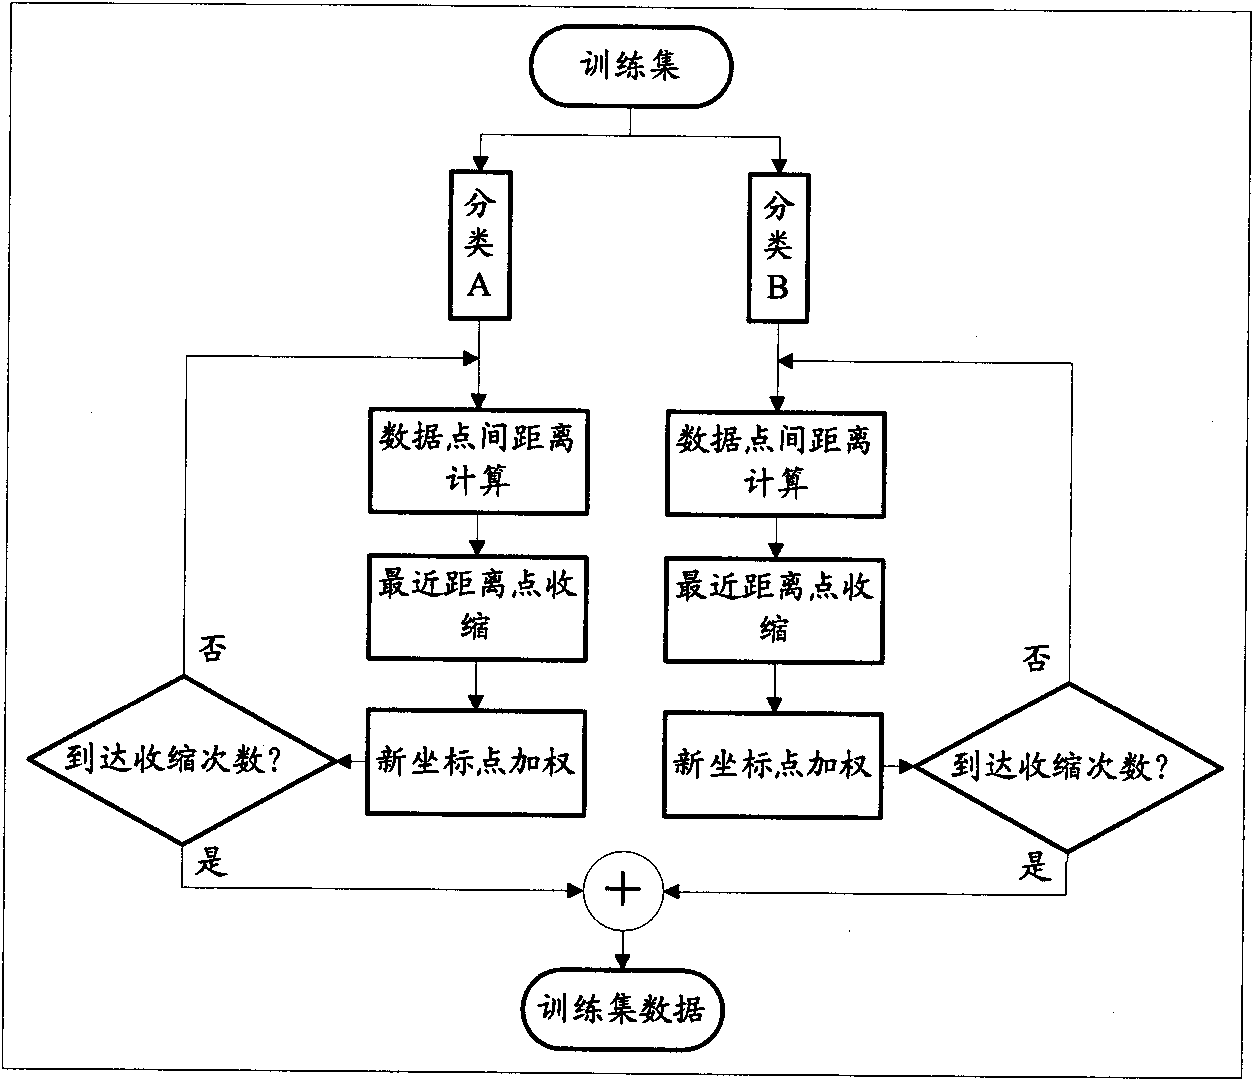 Weighting contraction method based on K near neighbor method